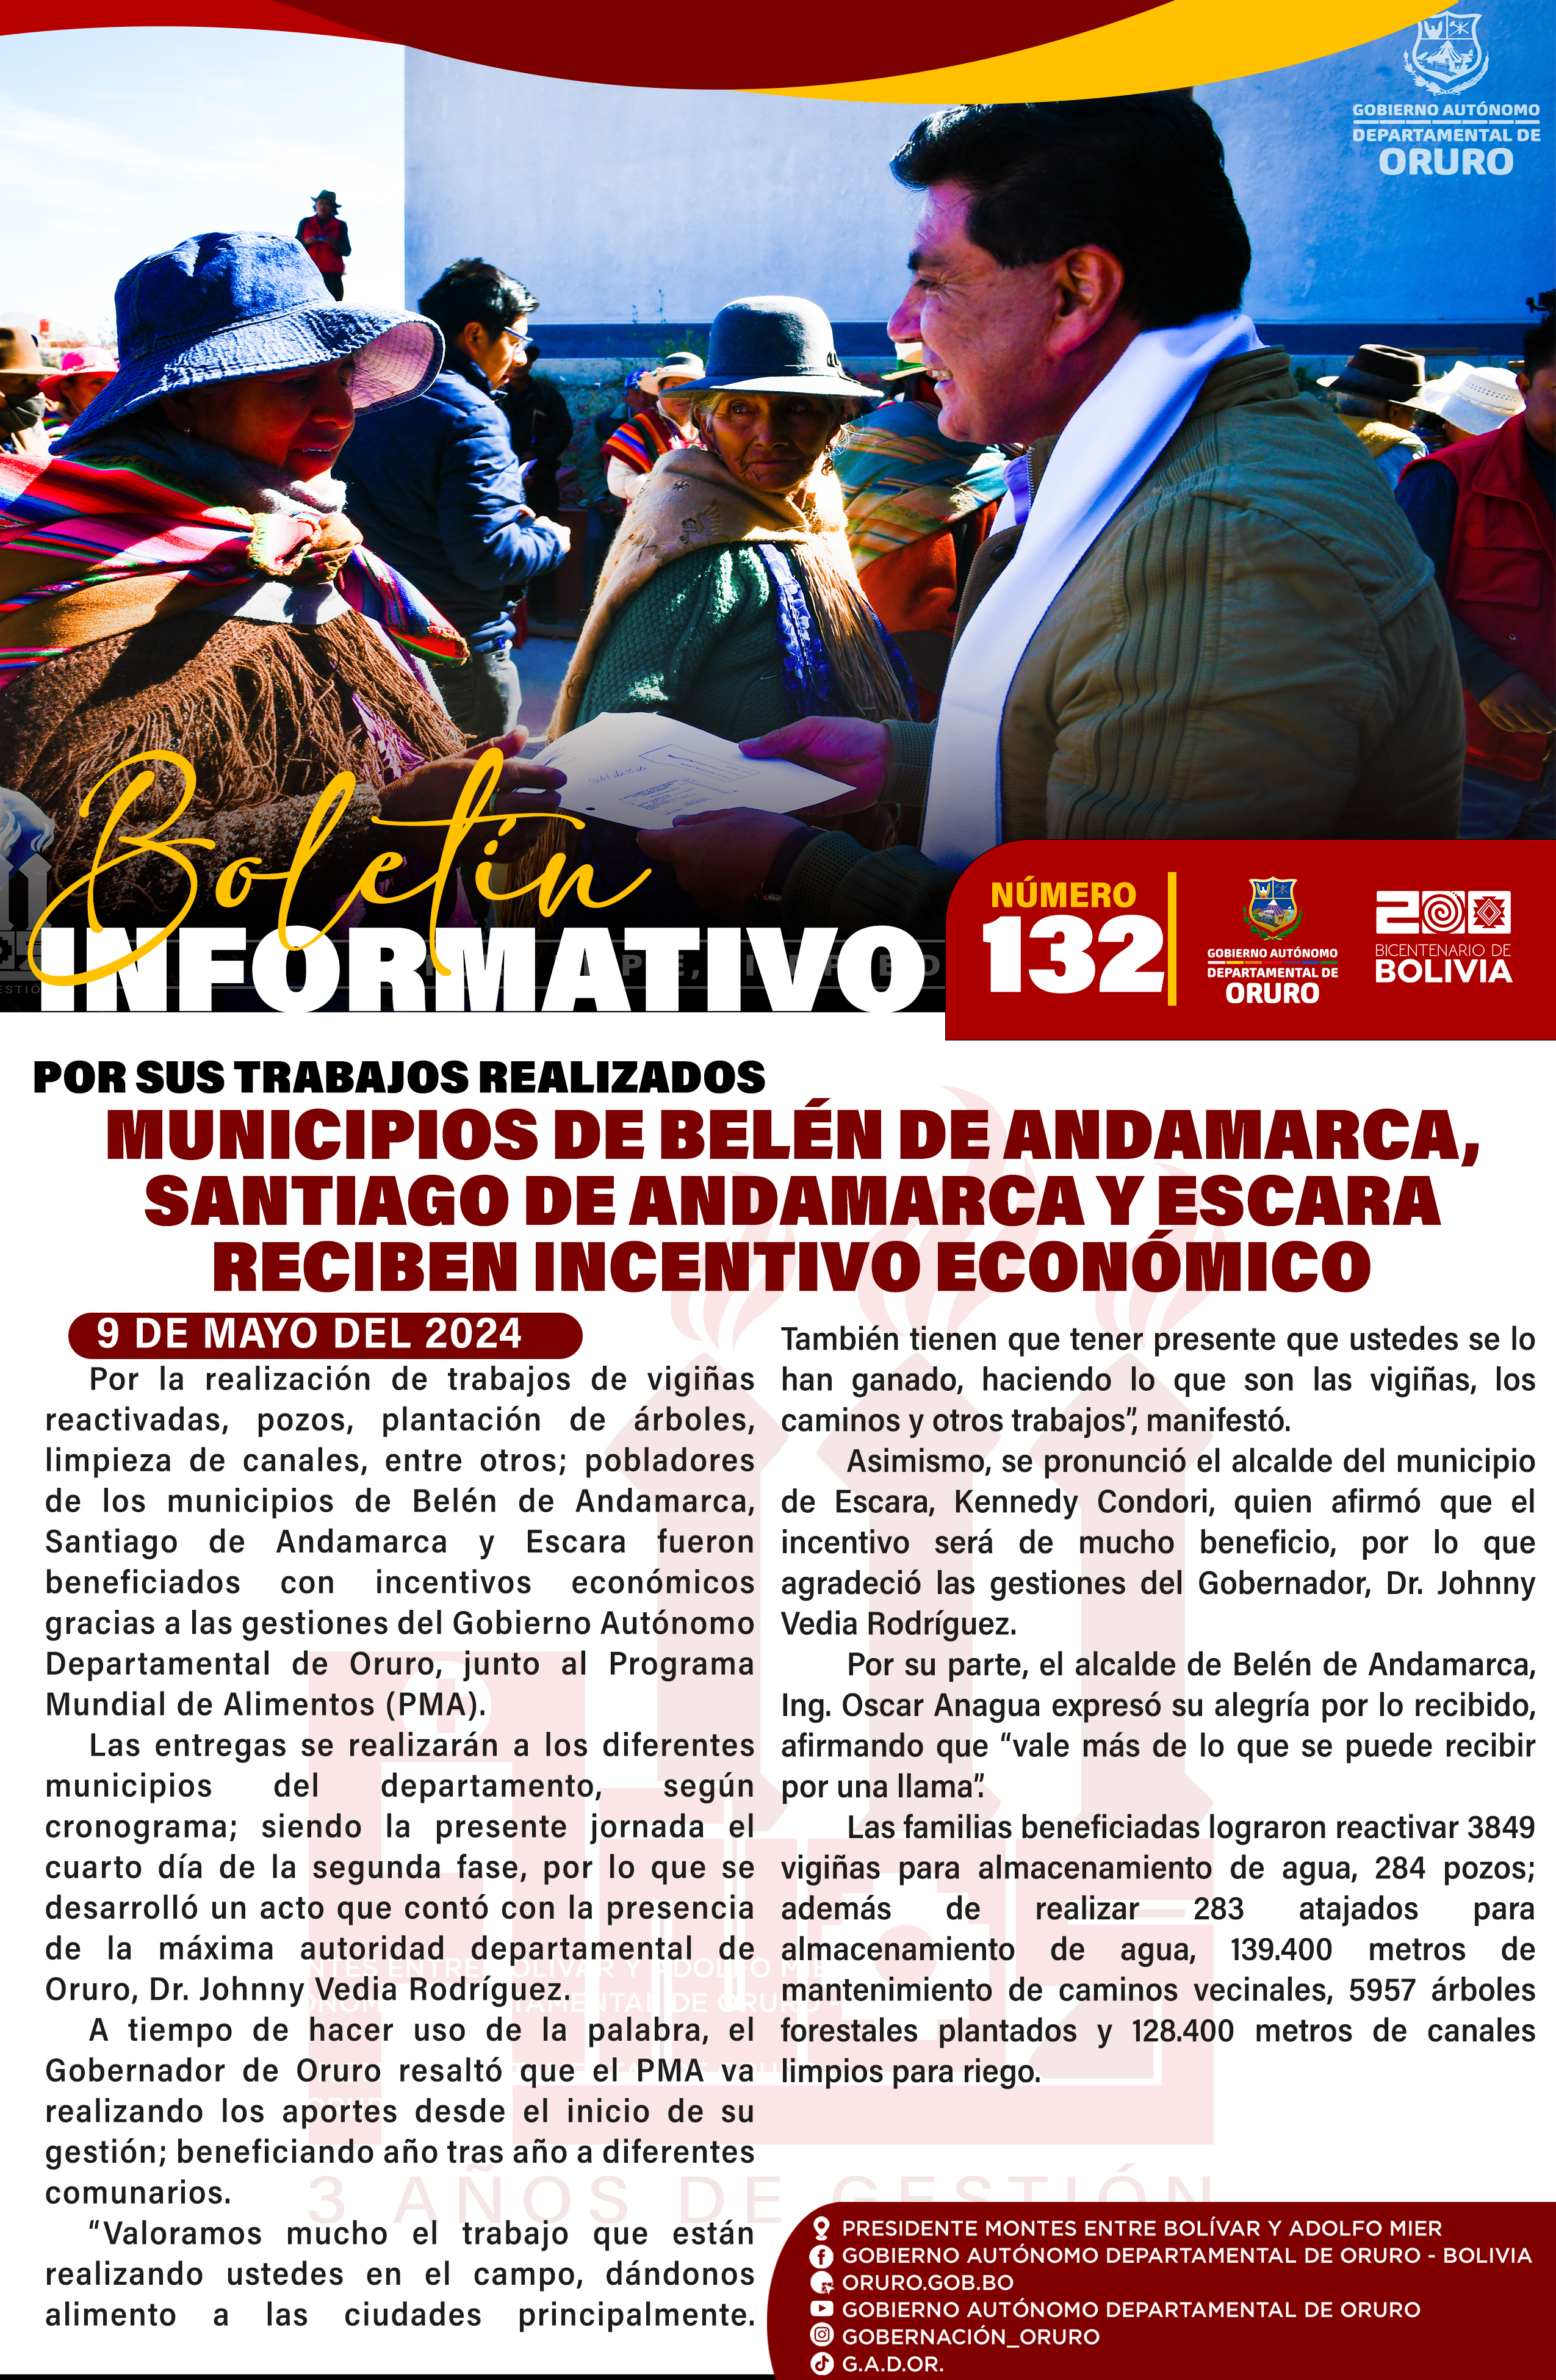 Por sus trabajos realizados, municipios de Belén de Andamarca, Santiago de Andamarca y Escara reciben incentivo económico